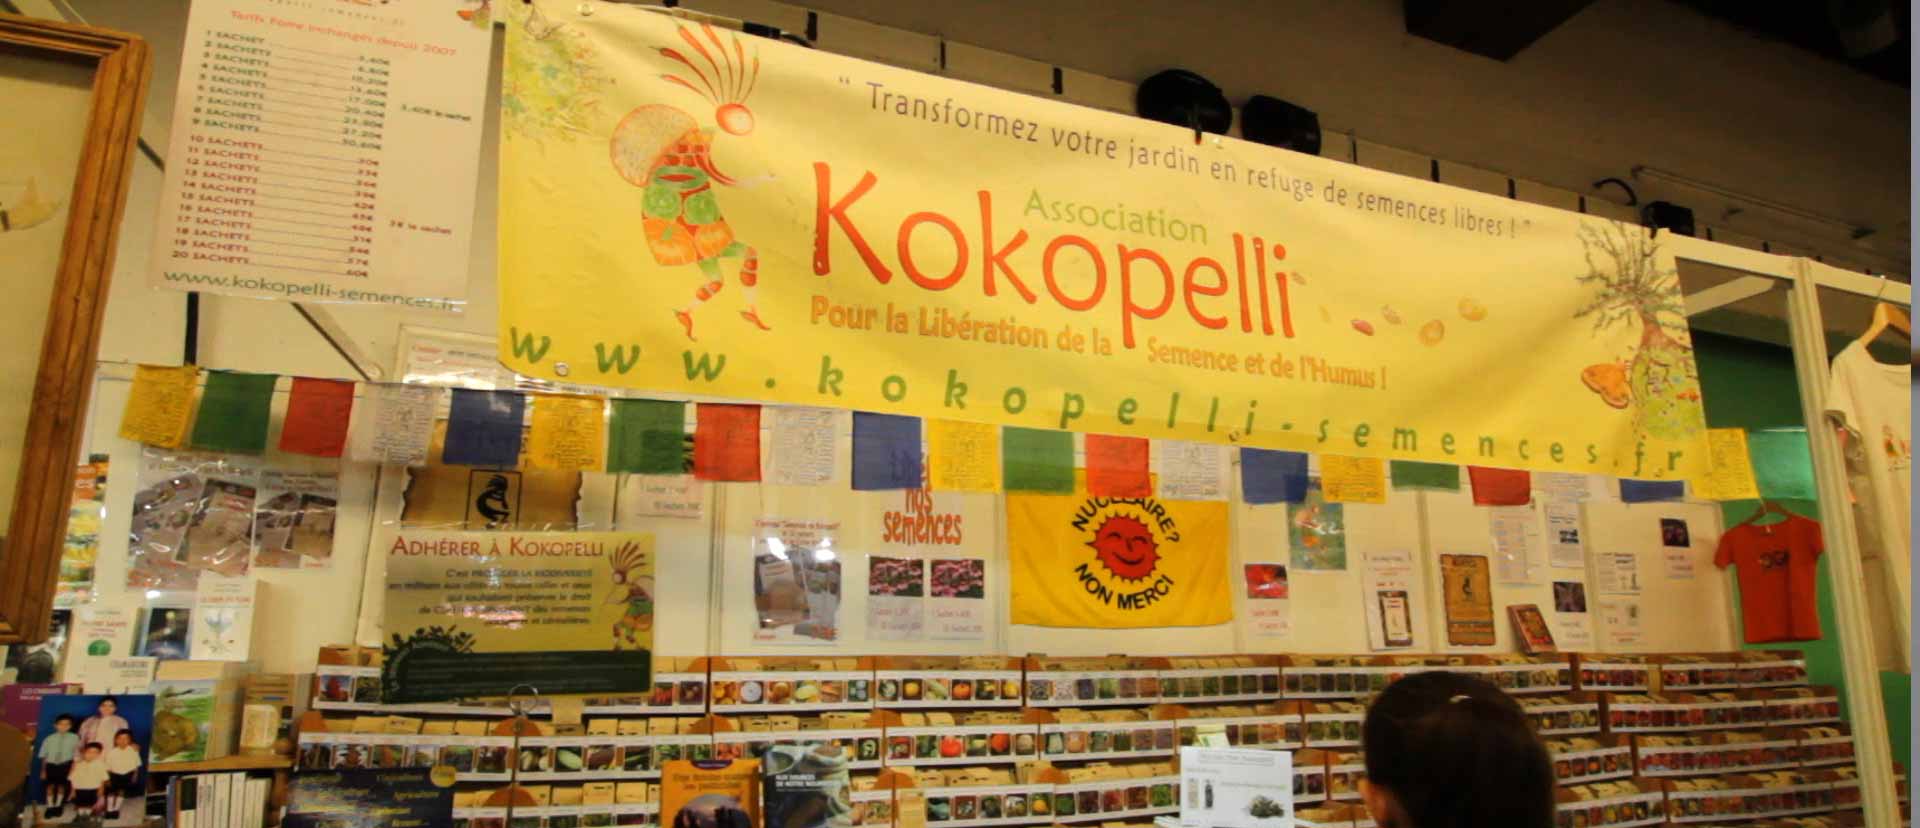 Association Kokopelli